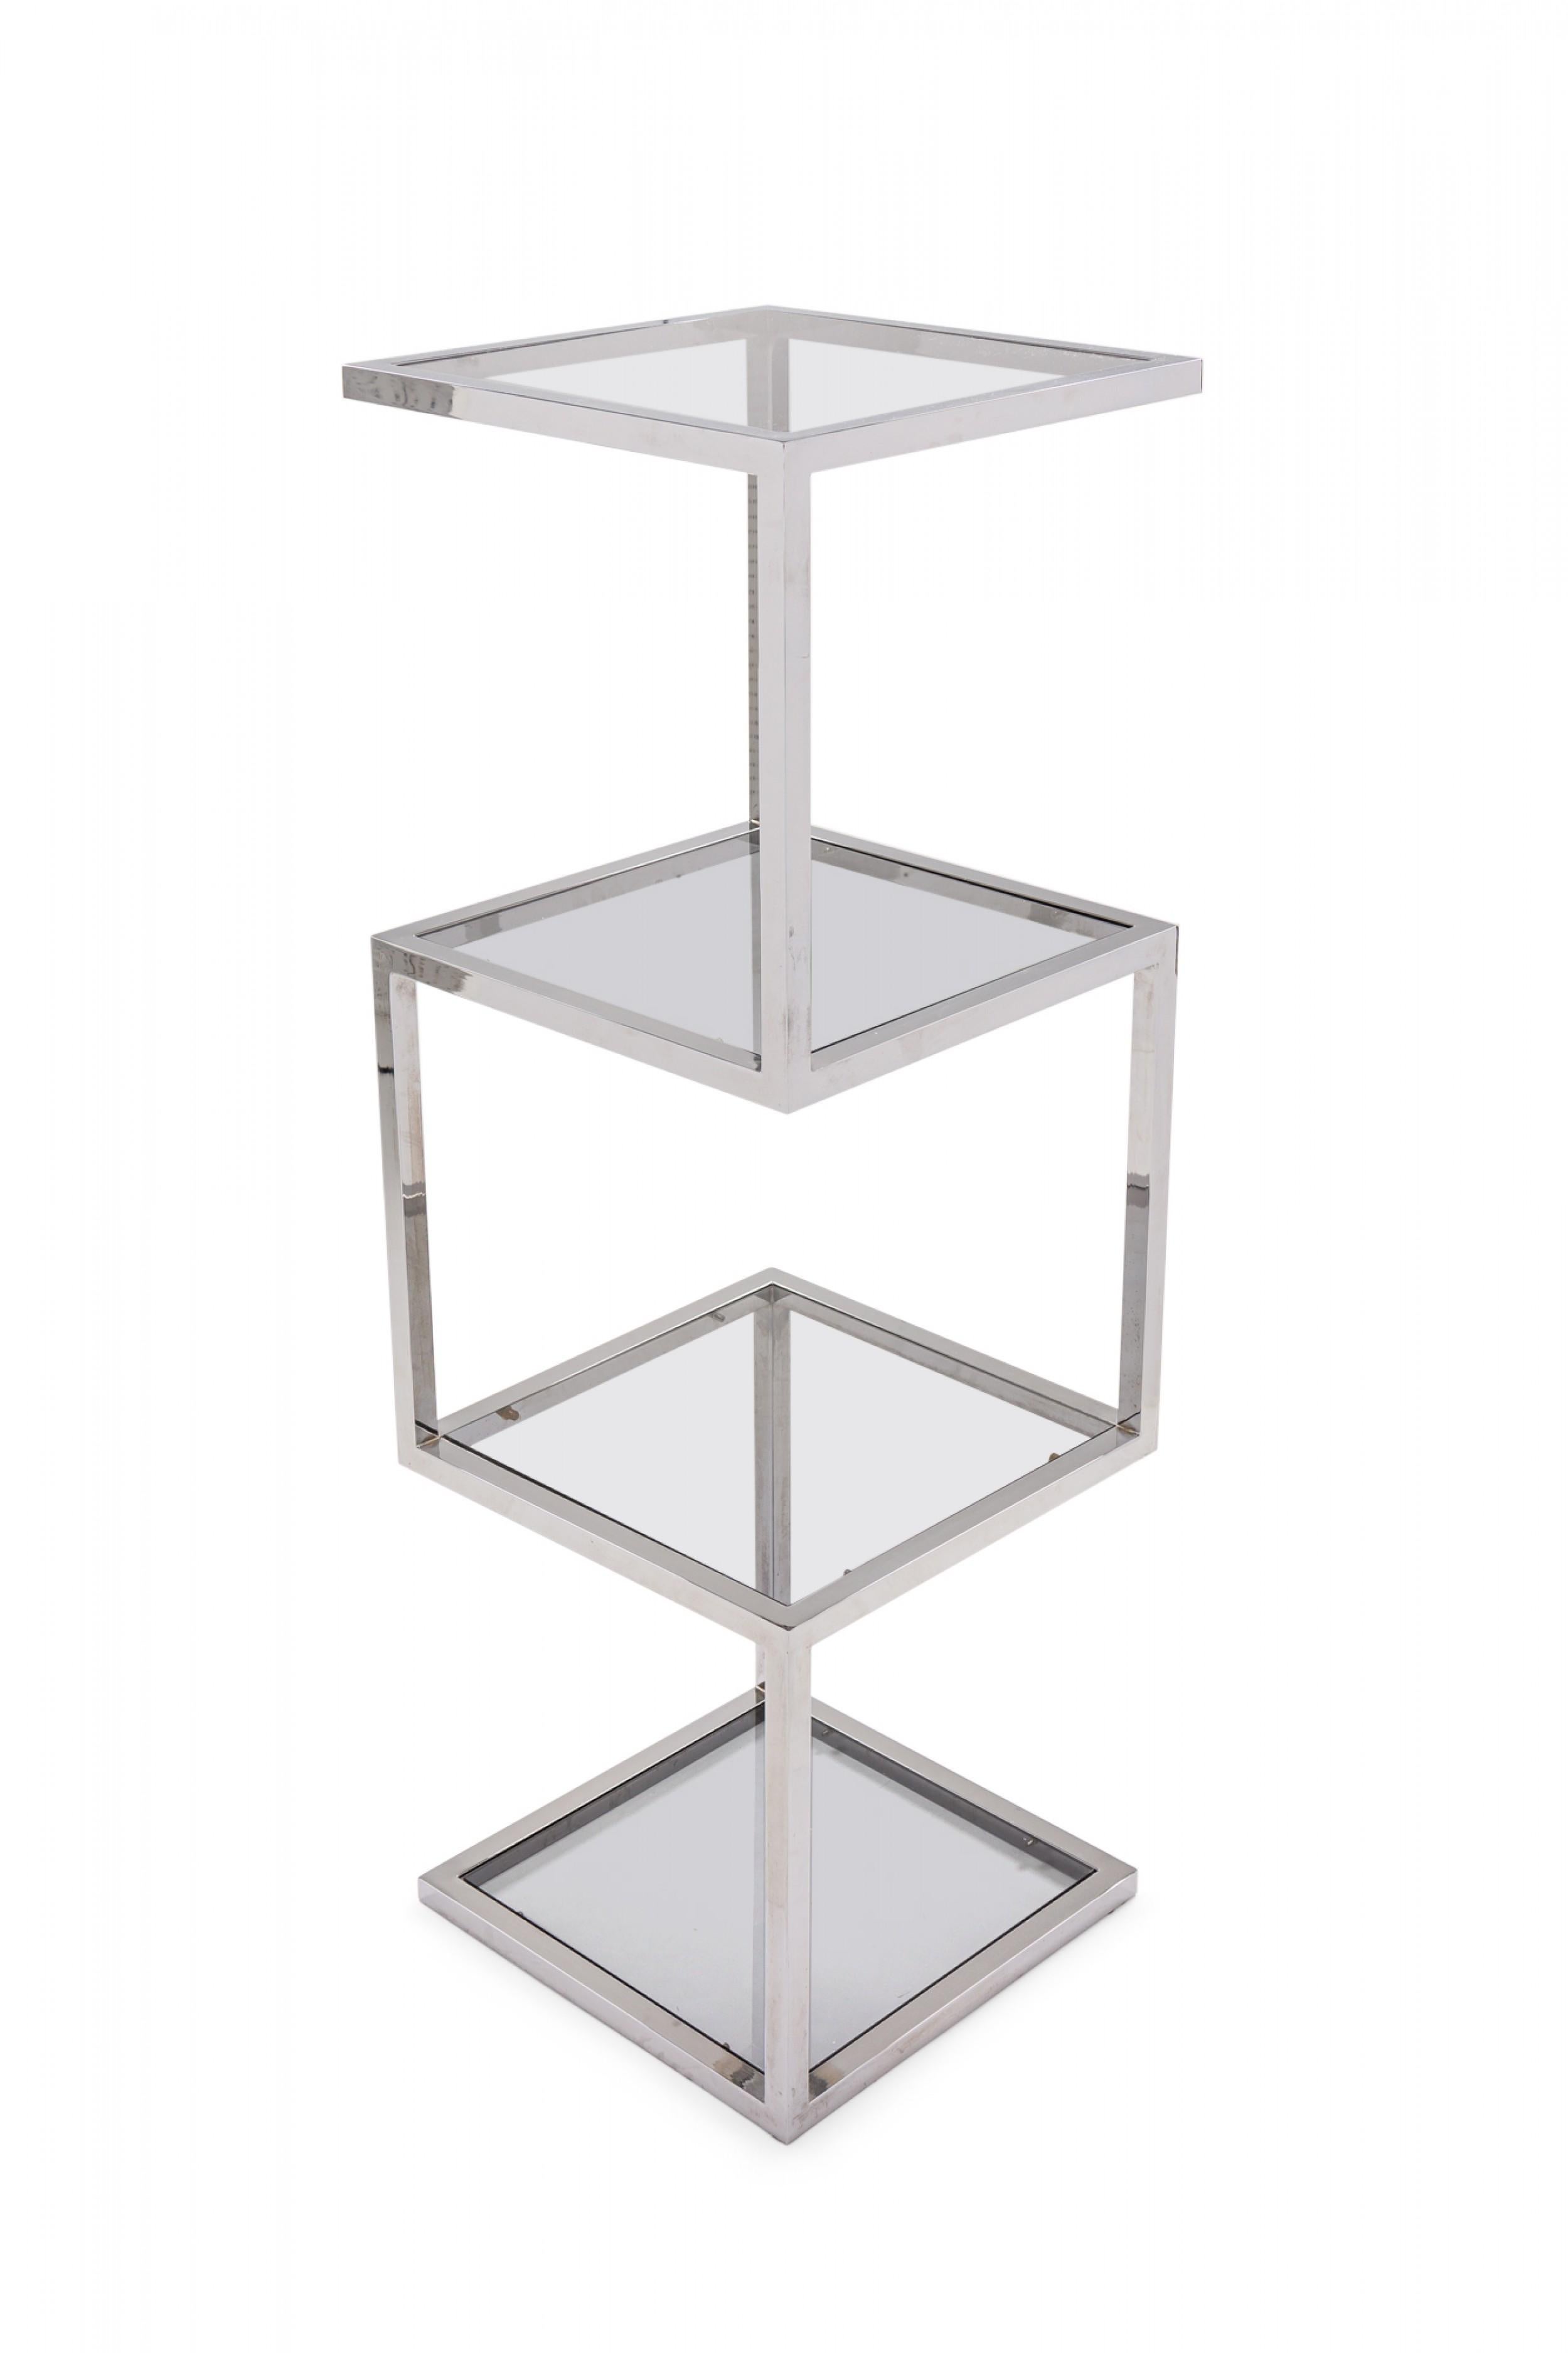 Etagère / présentoir américain Mid-Century Modern avec un cadre en acier chromé poli de forme géométrique et des étagères carrées en verre fumé.